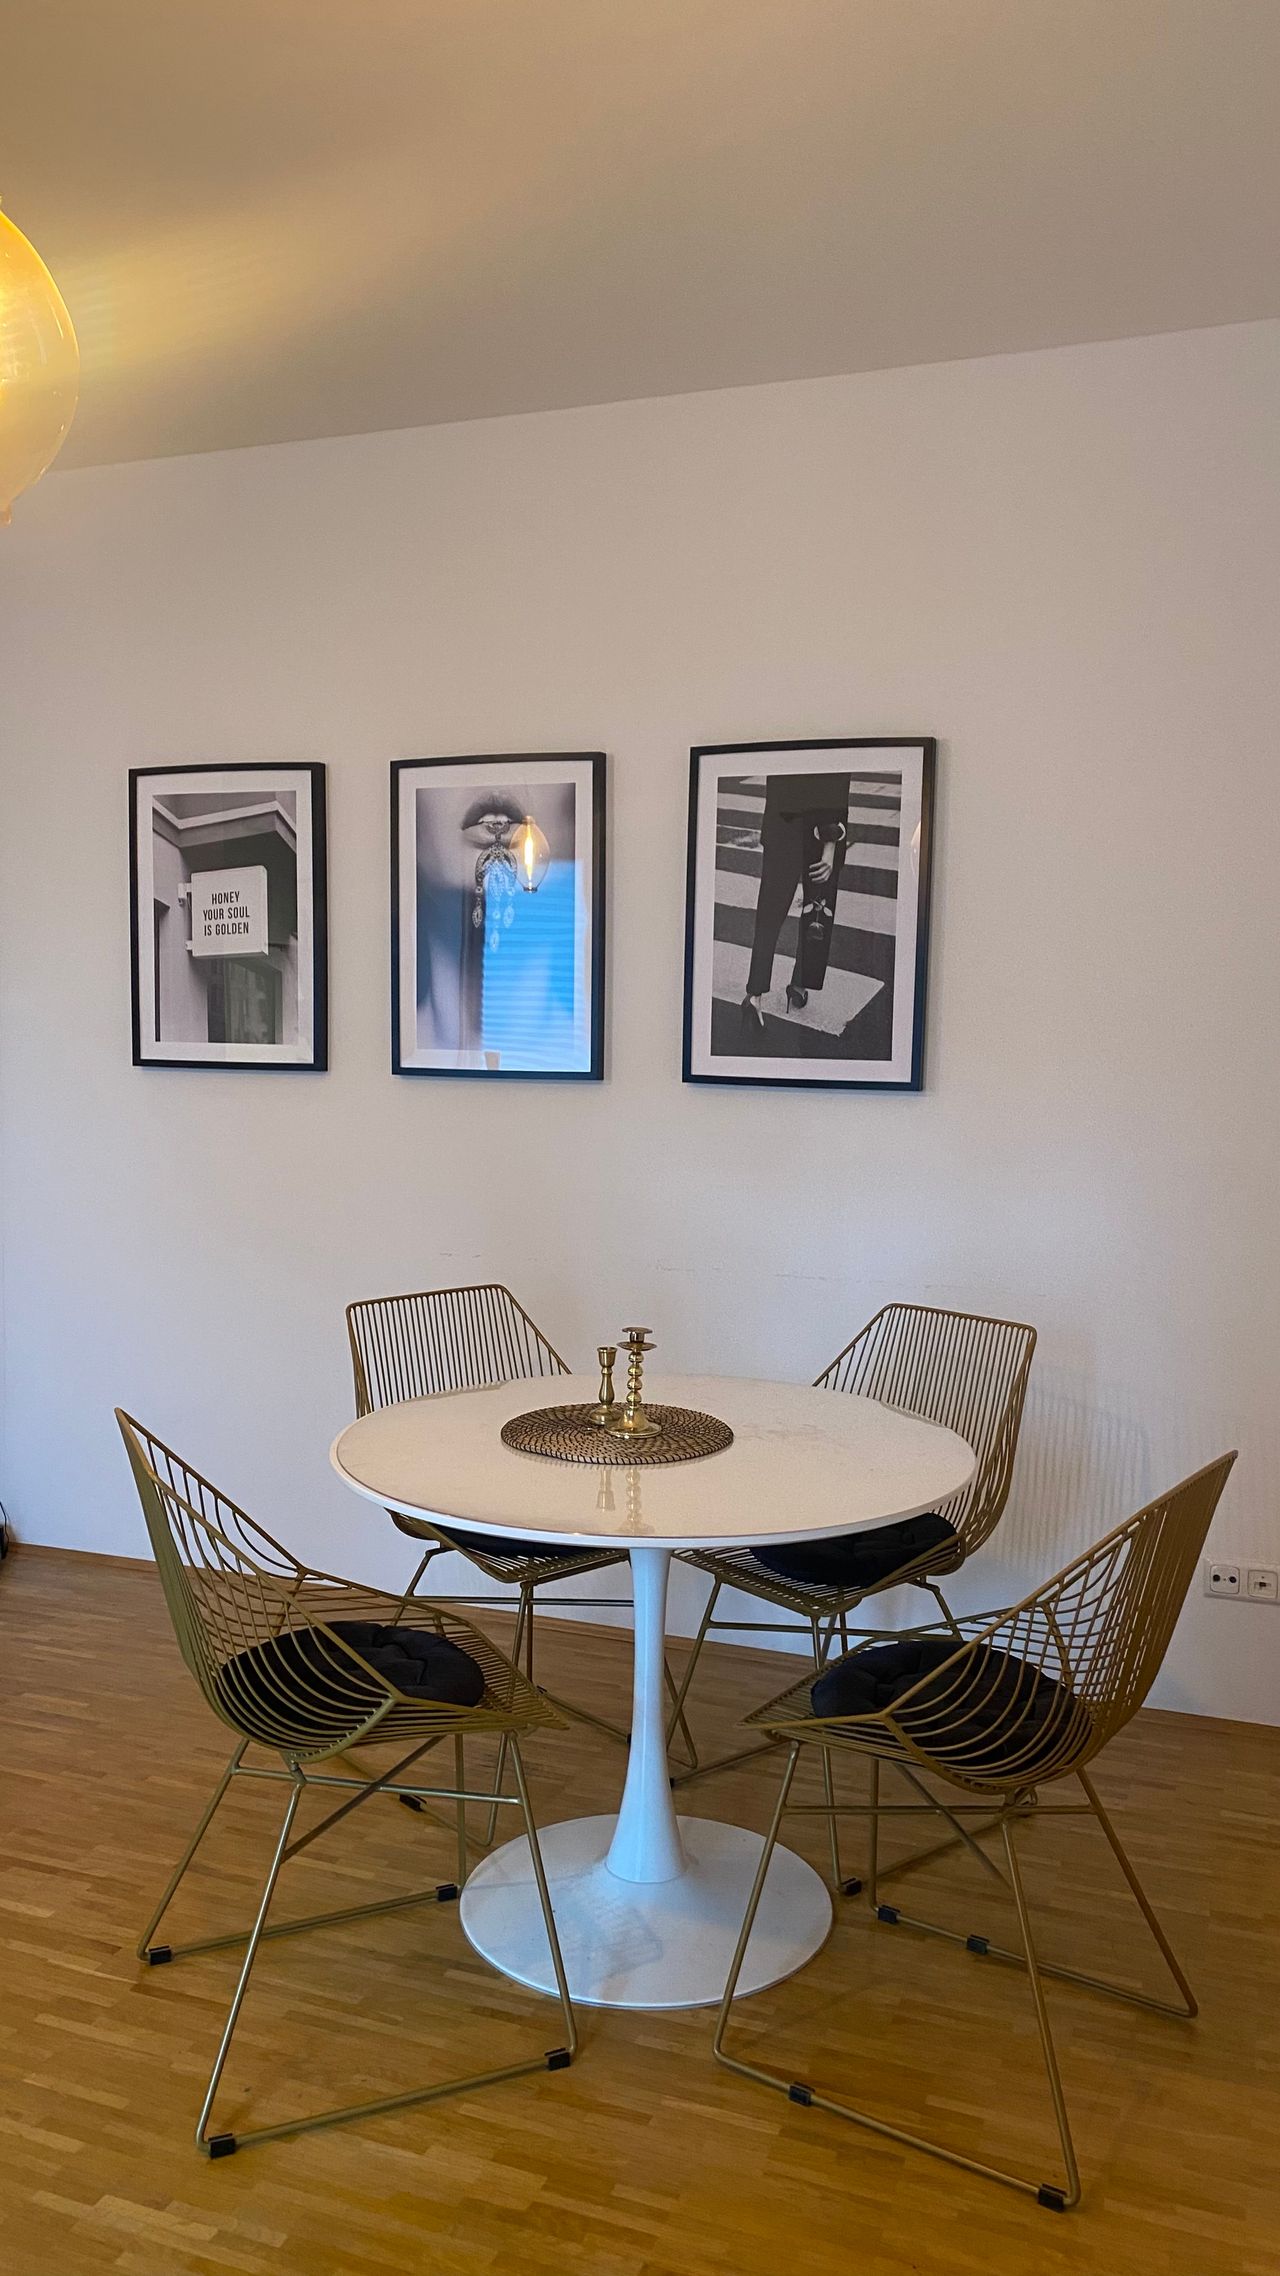 Modern, fully furnished loft located in Friedrichshain